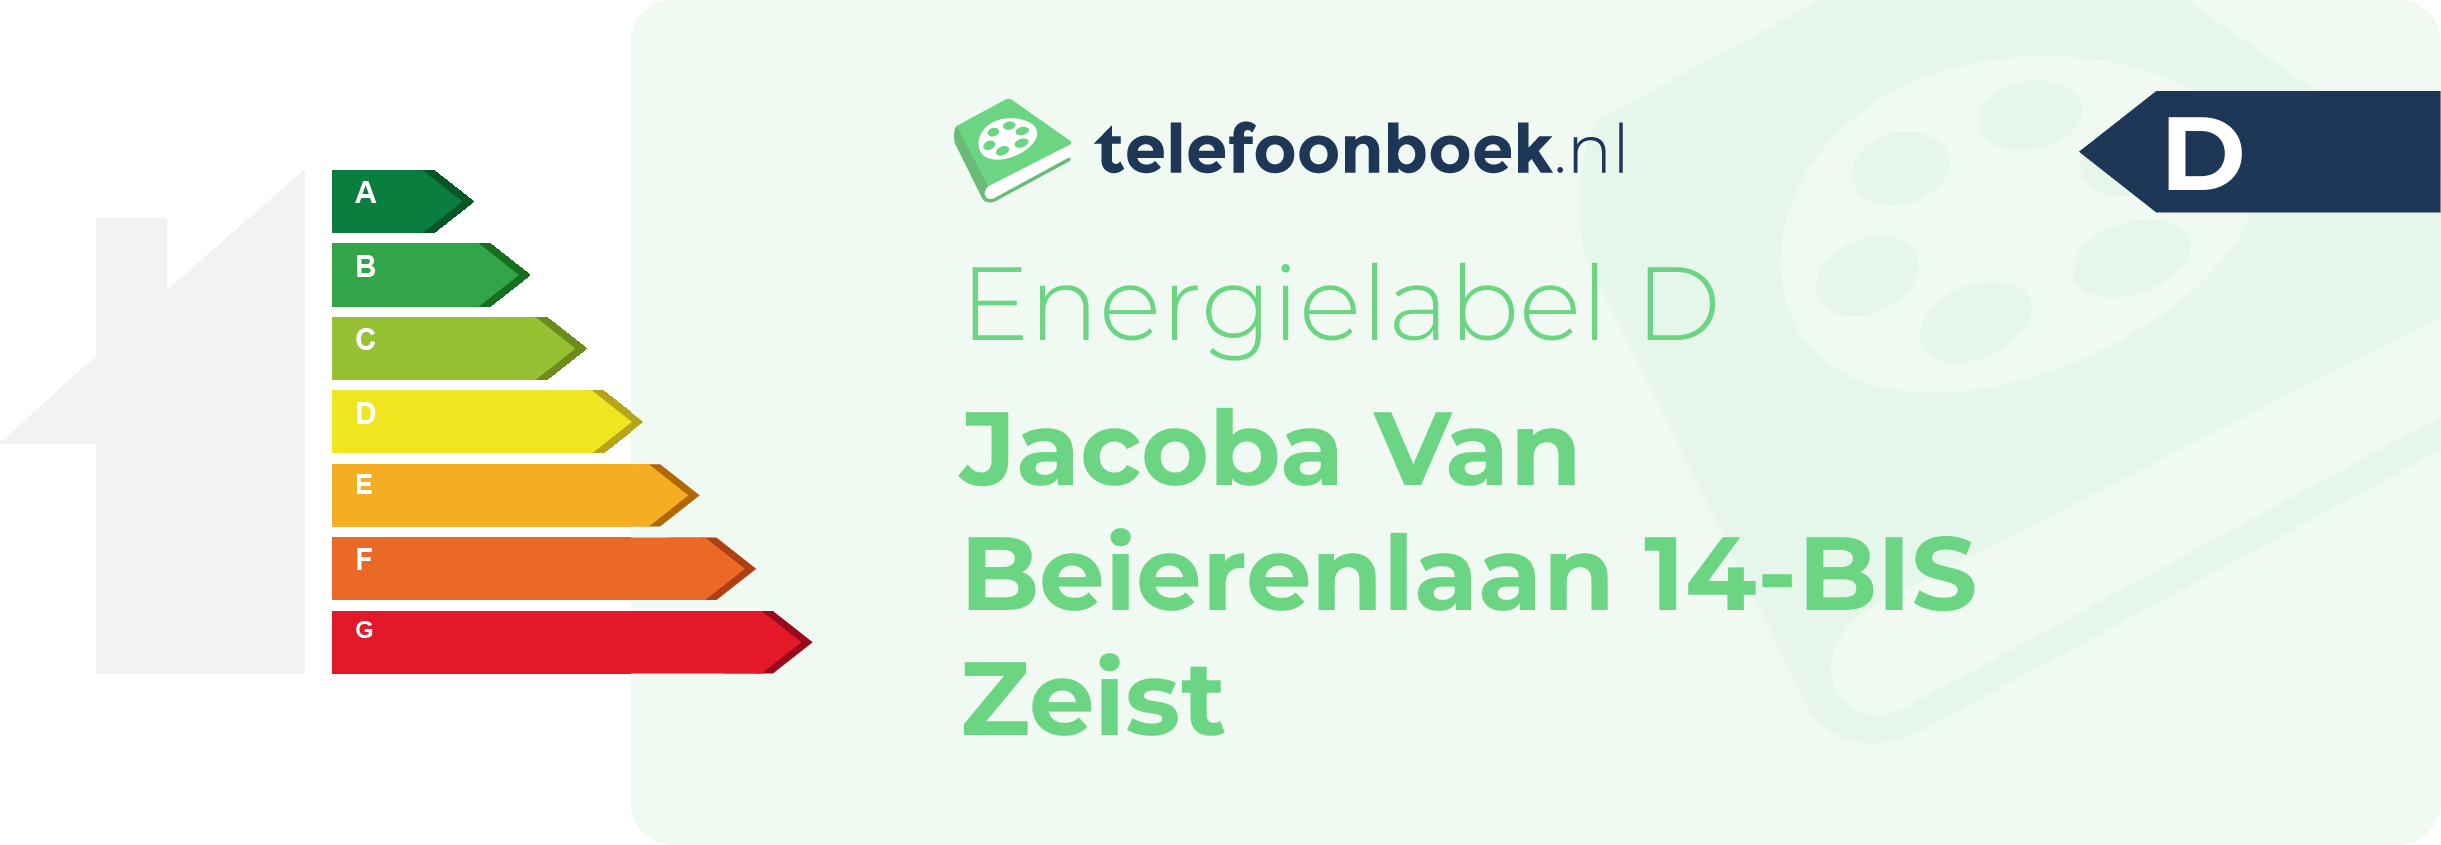 Energielabel Jacoba Van Beierenlaan 14-BIS Zeist